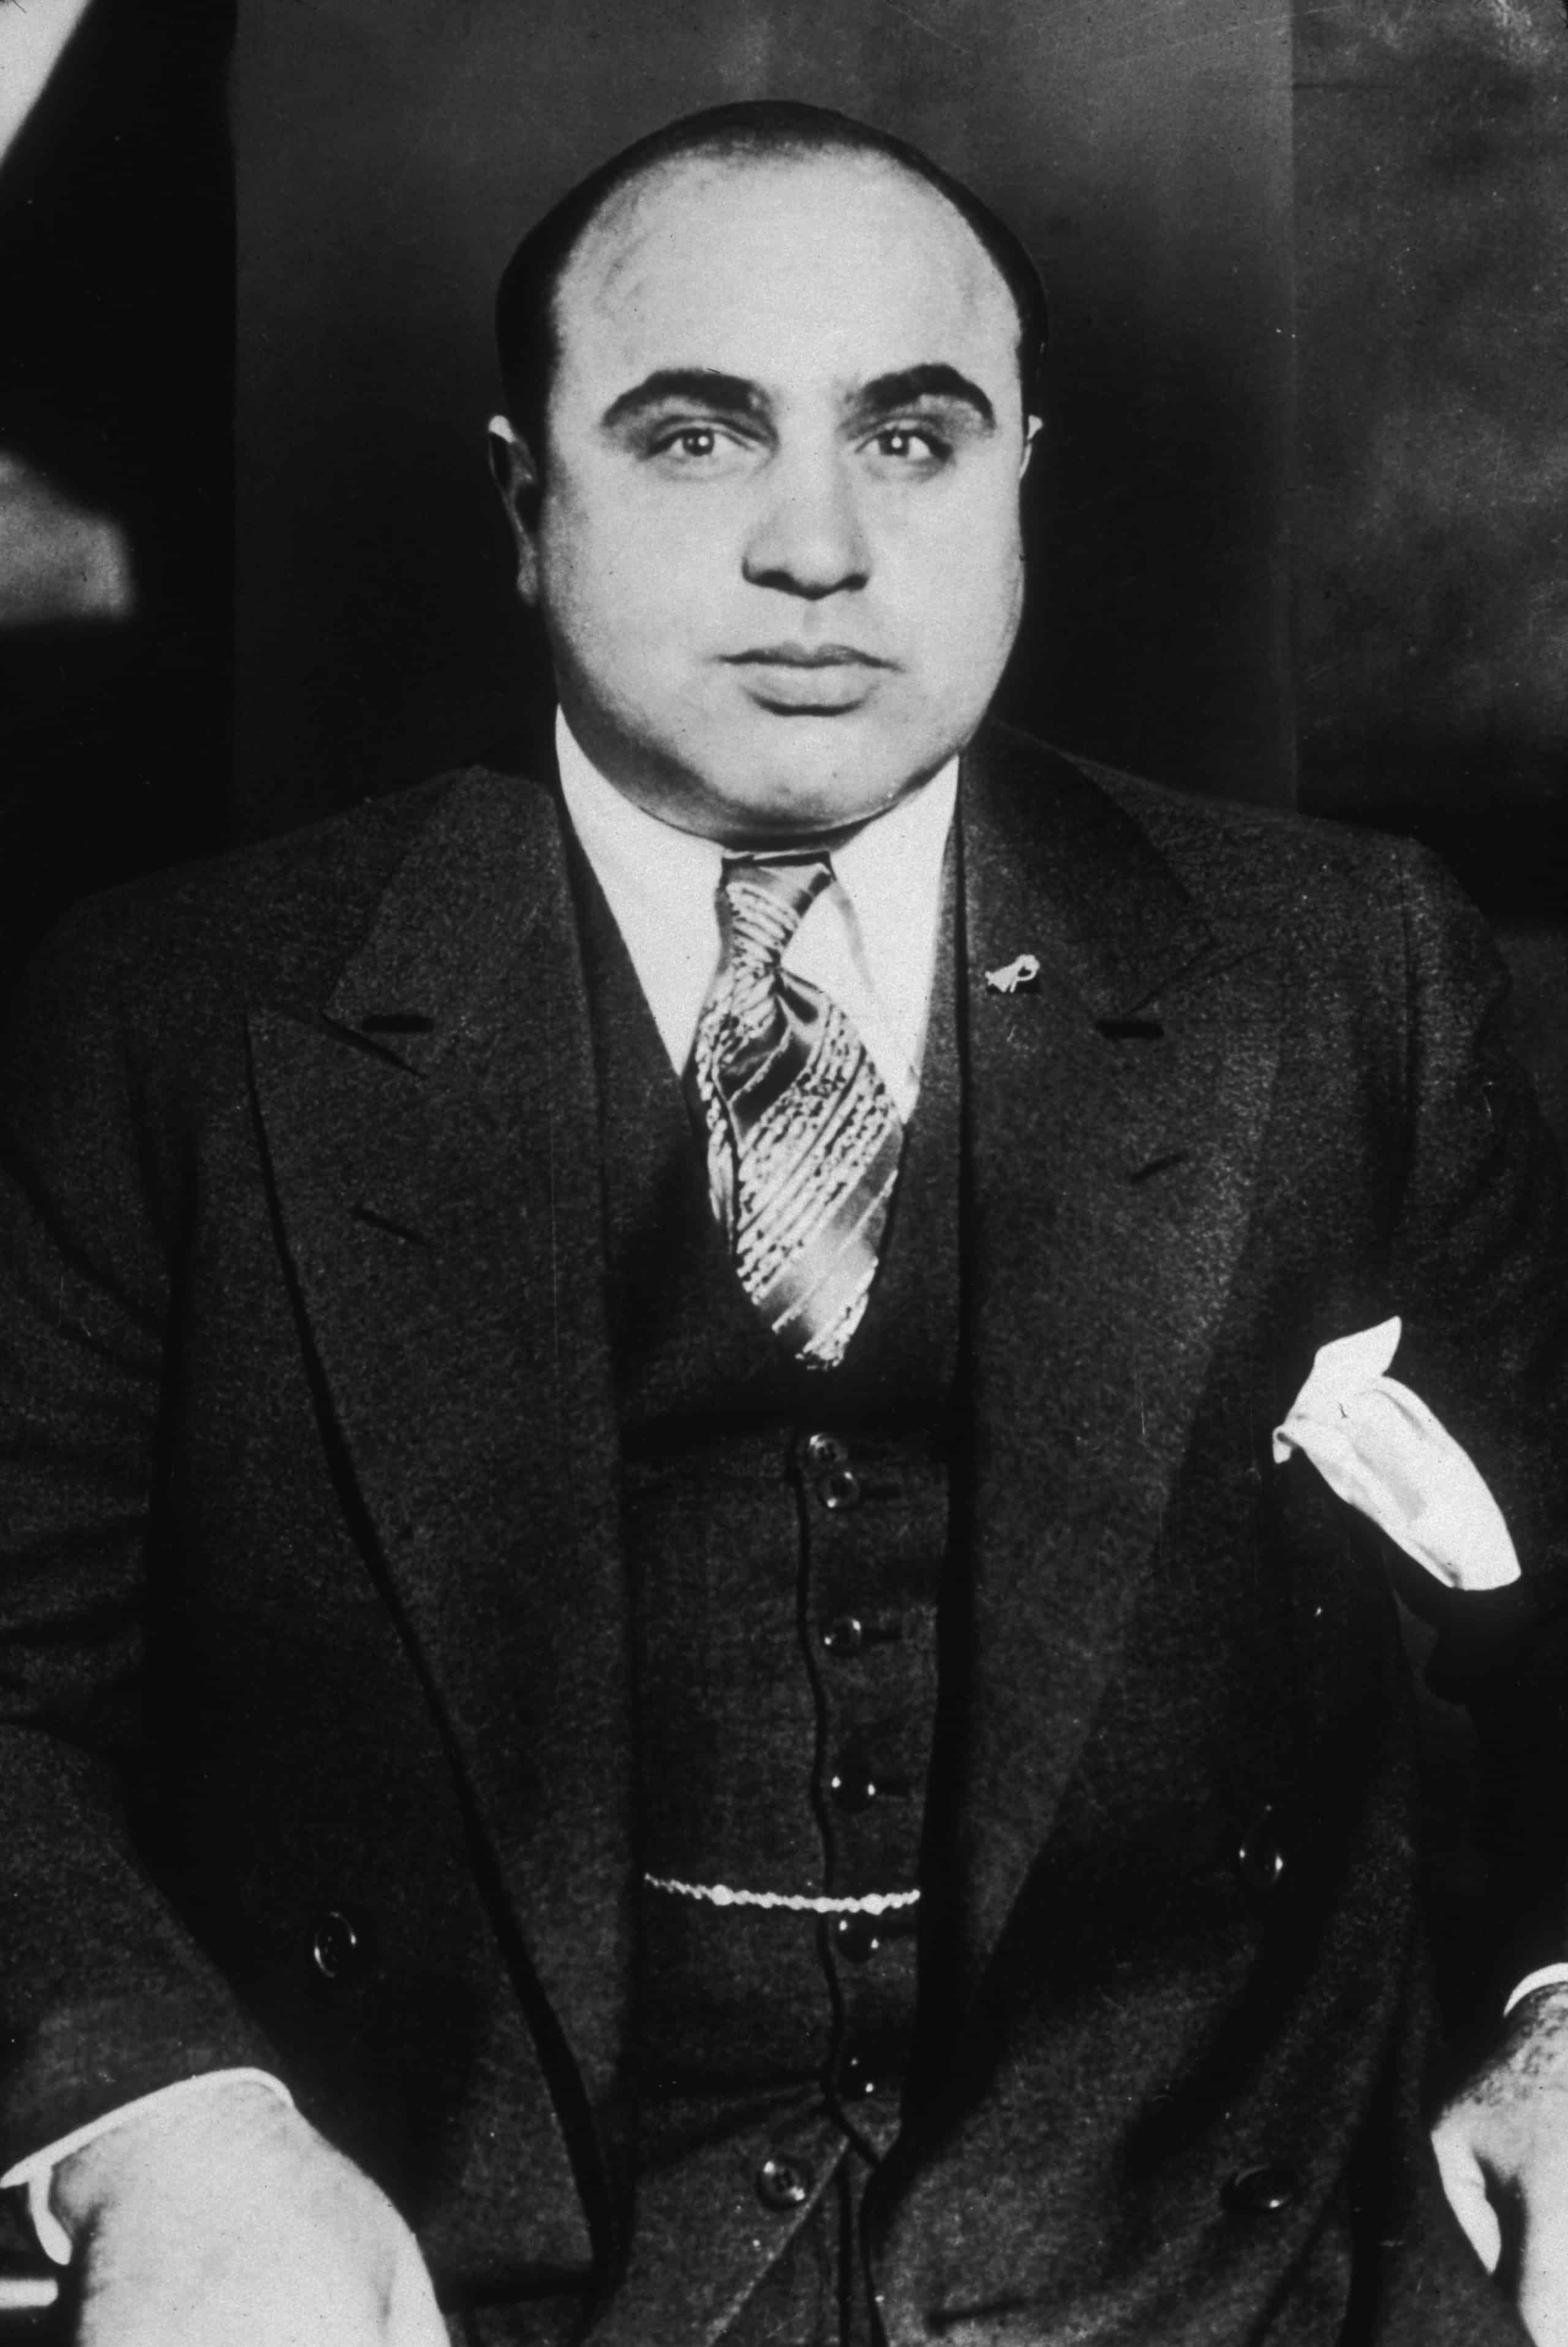  Quién era Al Capone: biografía de uno de los mayores gángsters de la historia